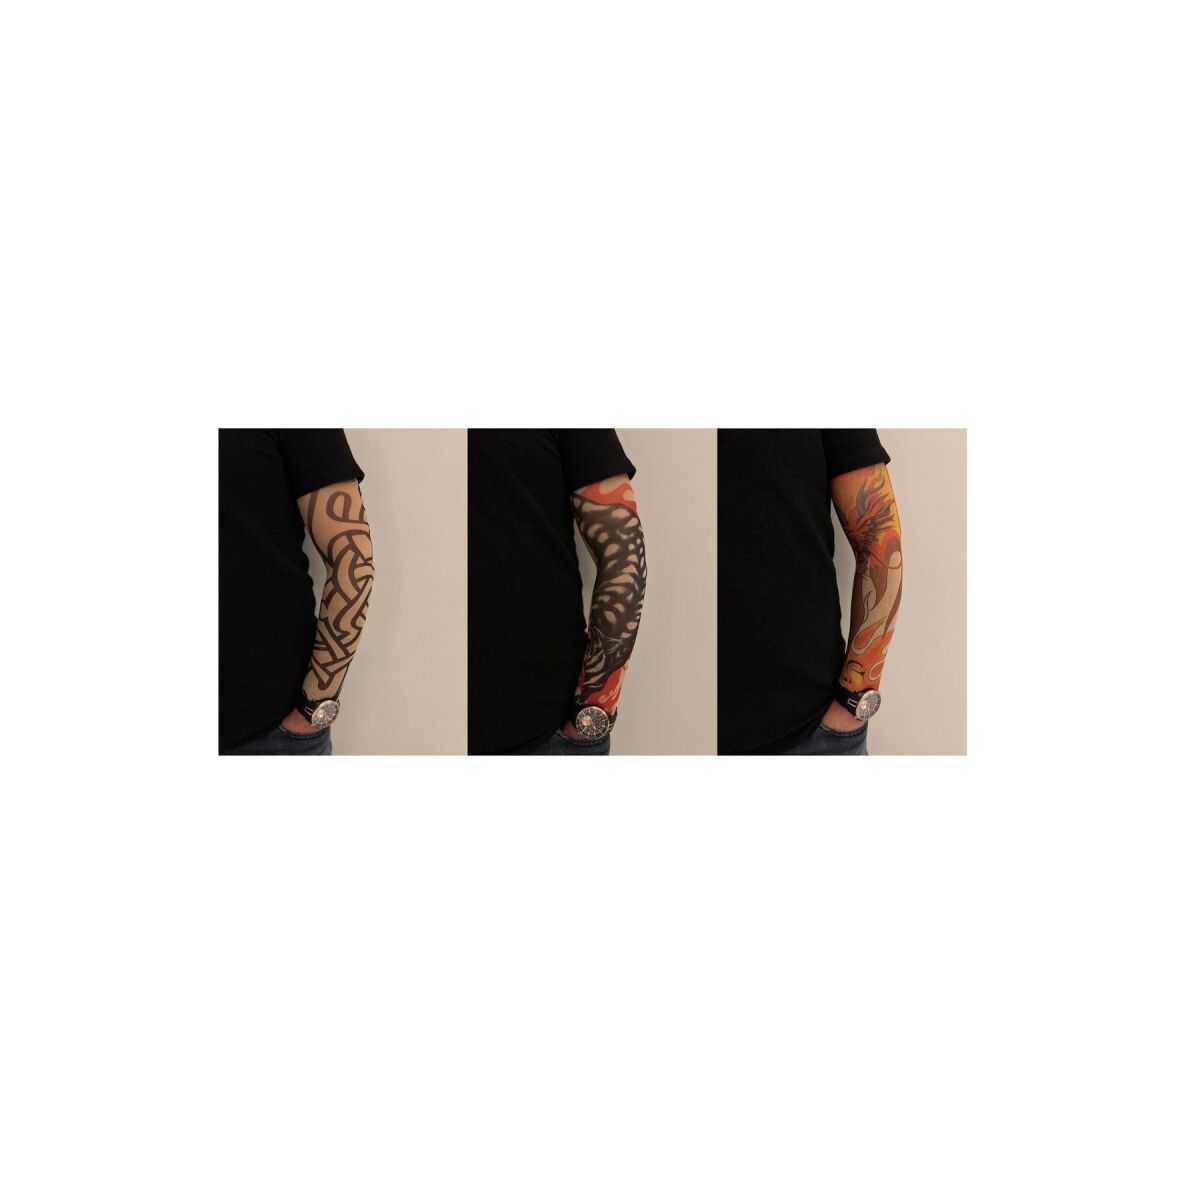 Giyilebilir Dövme 3 Çift 6 Adet Kol Çorap Dövmesi Sleeve Tattoo Set17